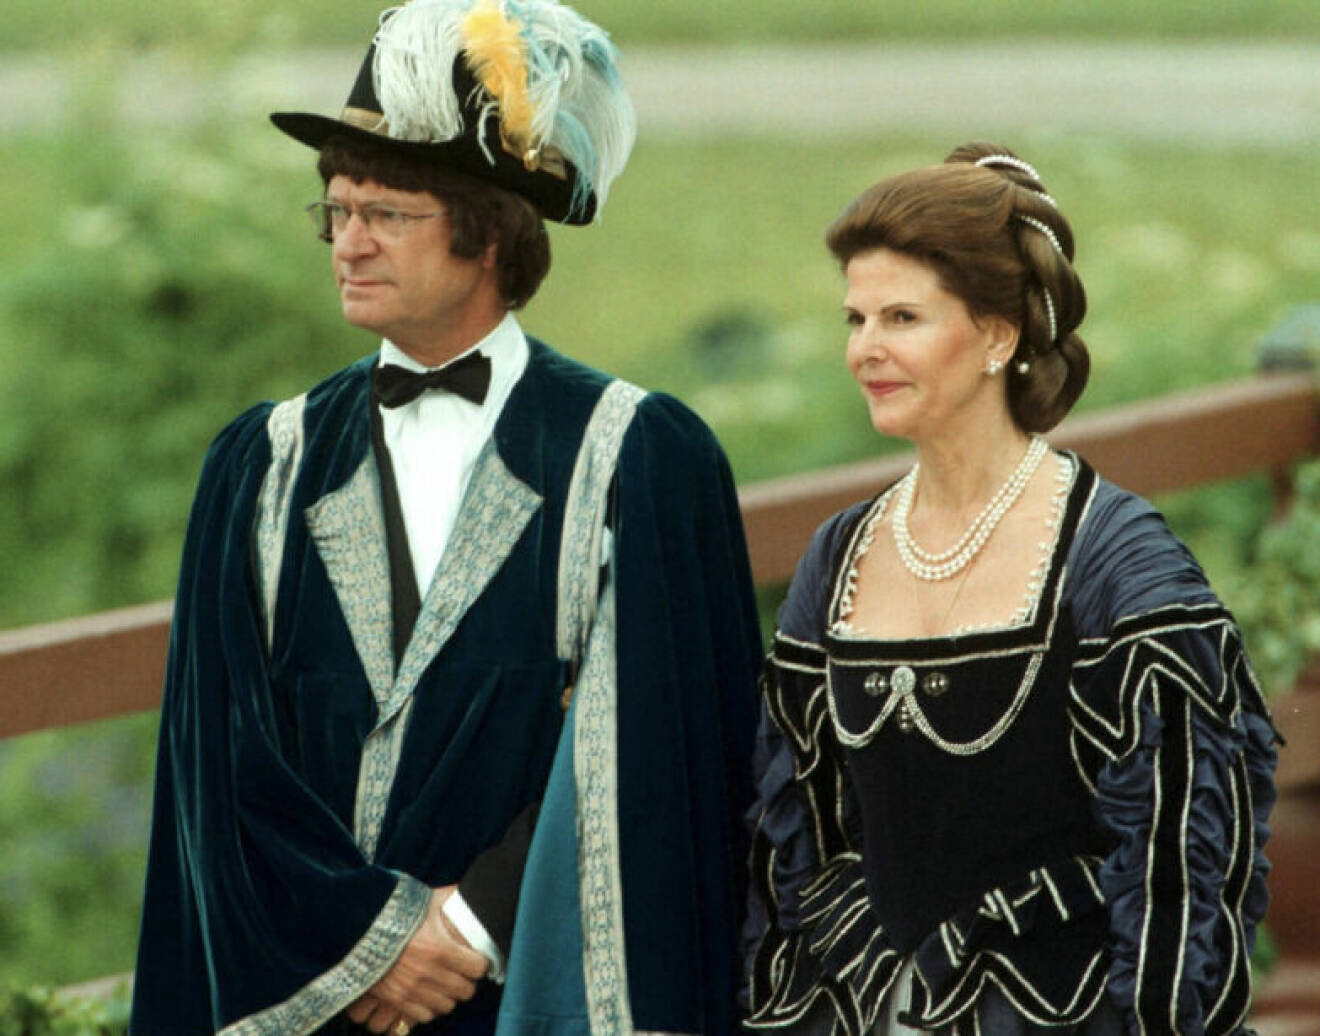 Kungen och drottningen firar Silverbröllop i svällande barockkostymer